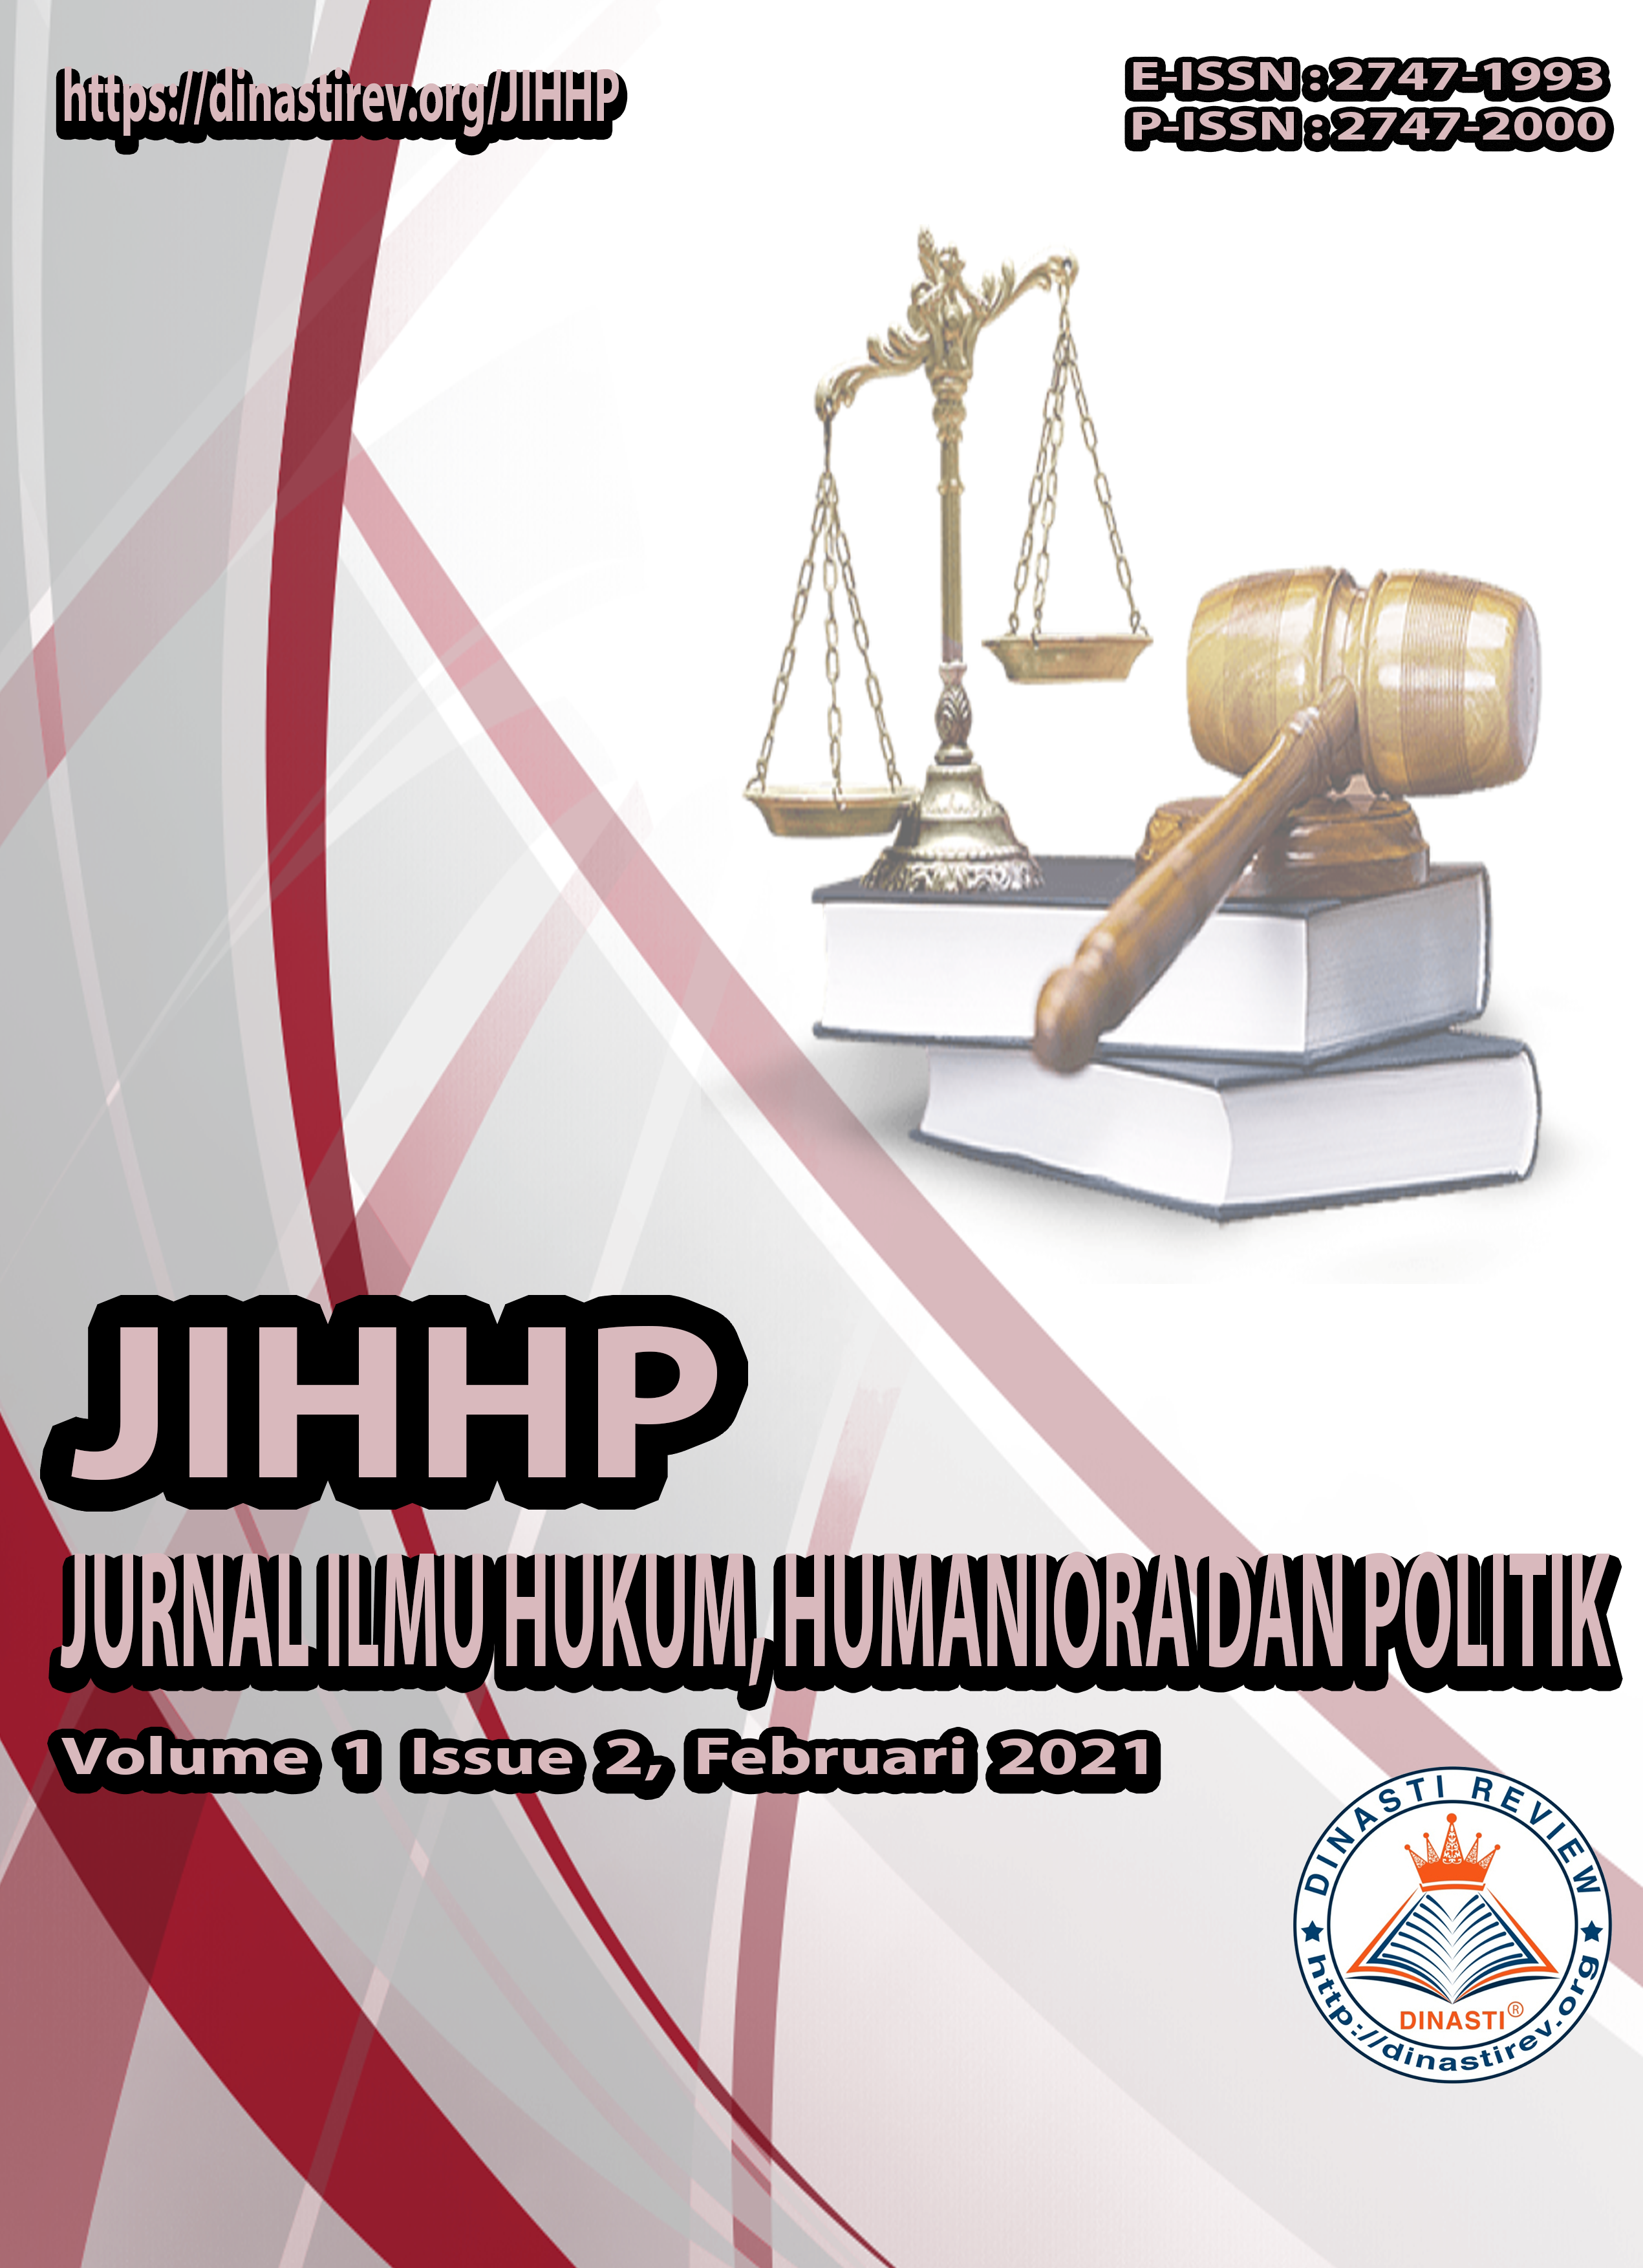 					View Vol. 1 No. 2 (2021): (JIHHP) Jurnal Ilmu Hukum, Humaniora dan Politik (Februari 2021)
				